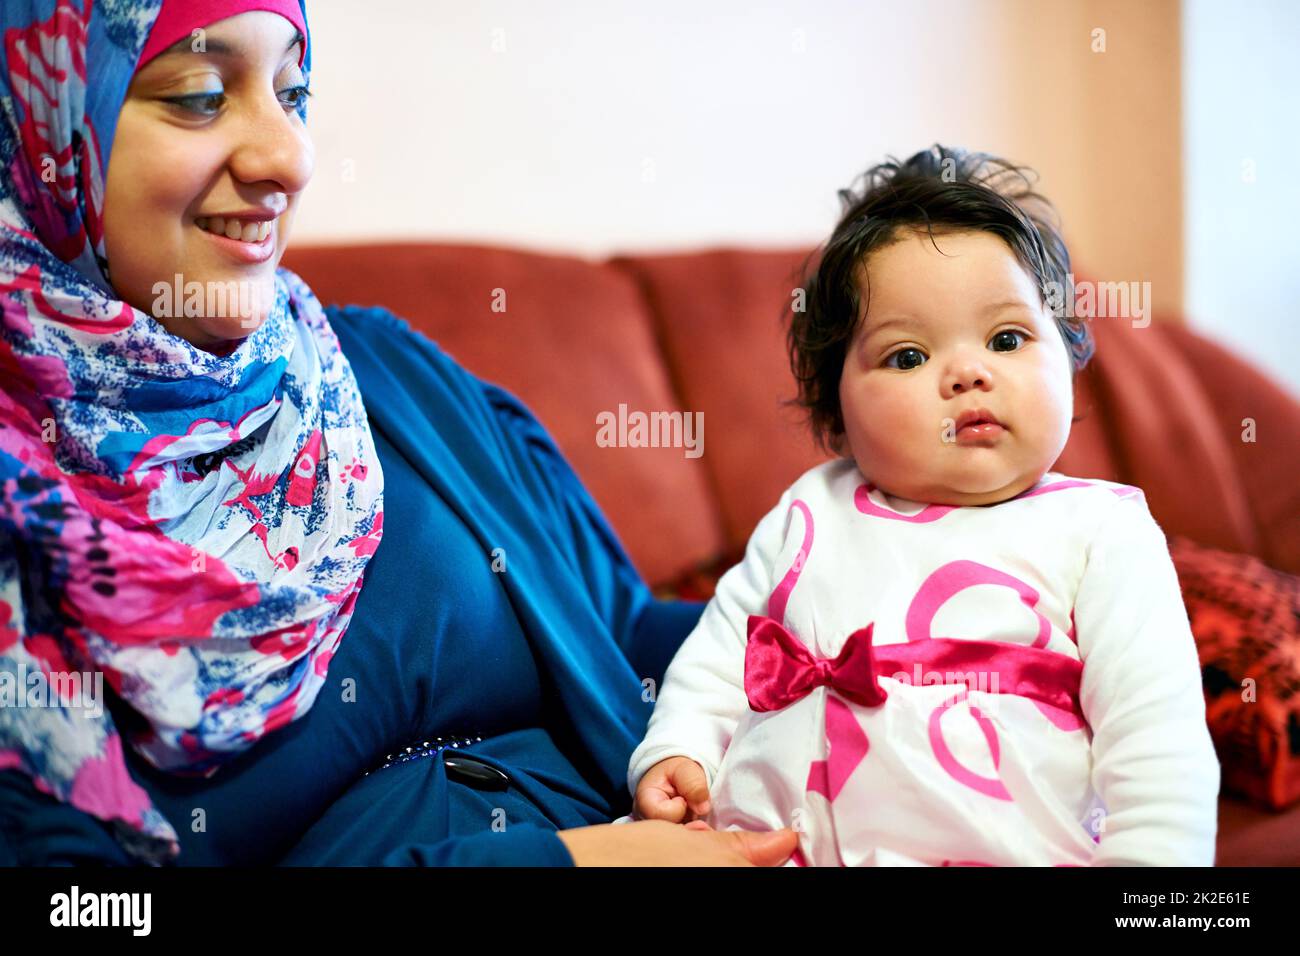 Sie erfüllt mein Leben mit Freude. Aufnahme einer muslimischen Mutter und ihres kleinen Mädchens. Stockfoto